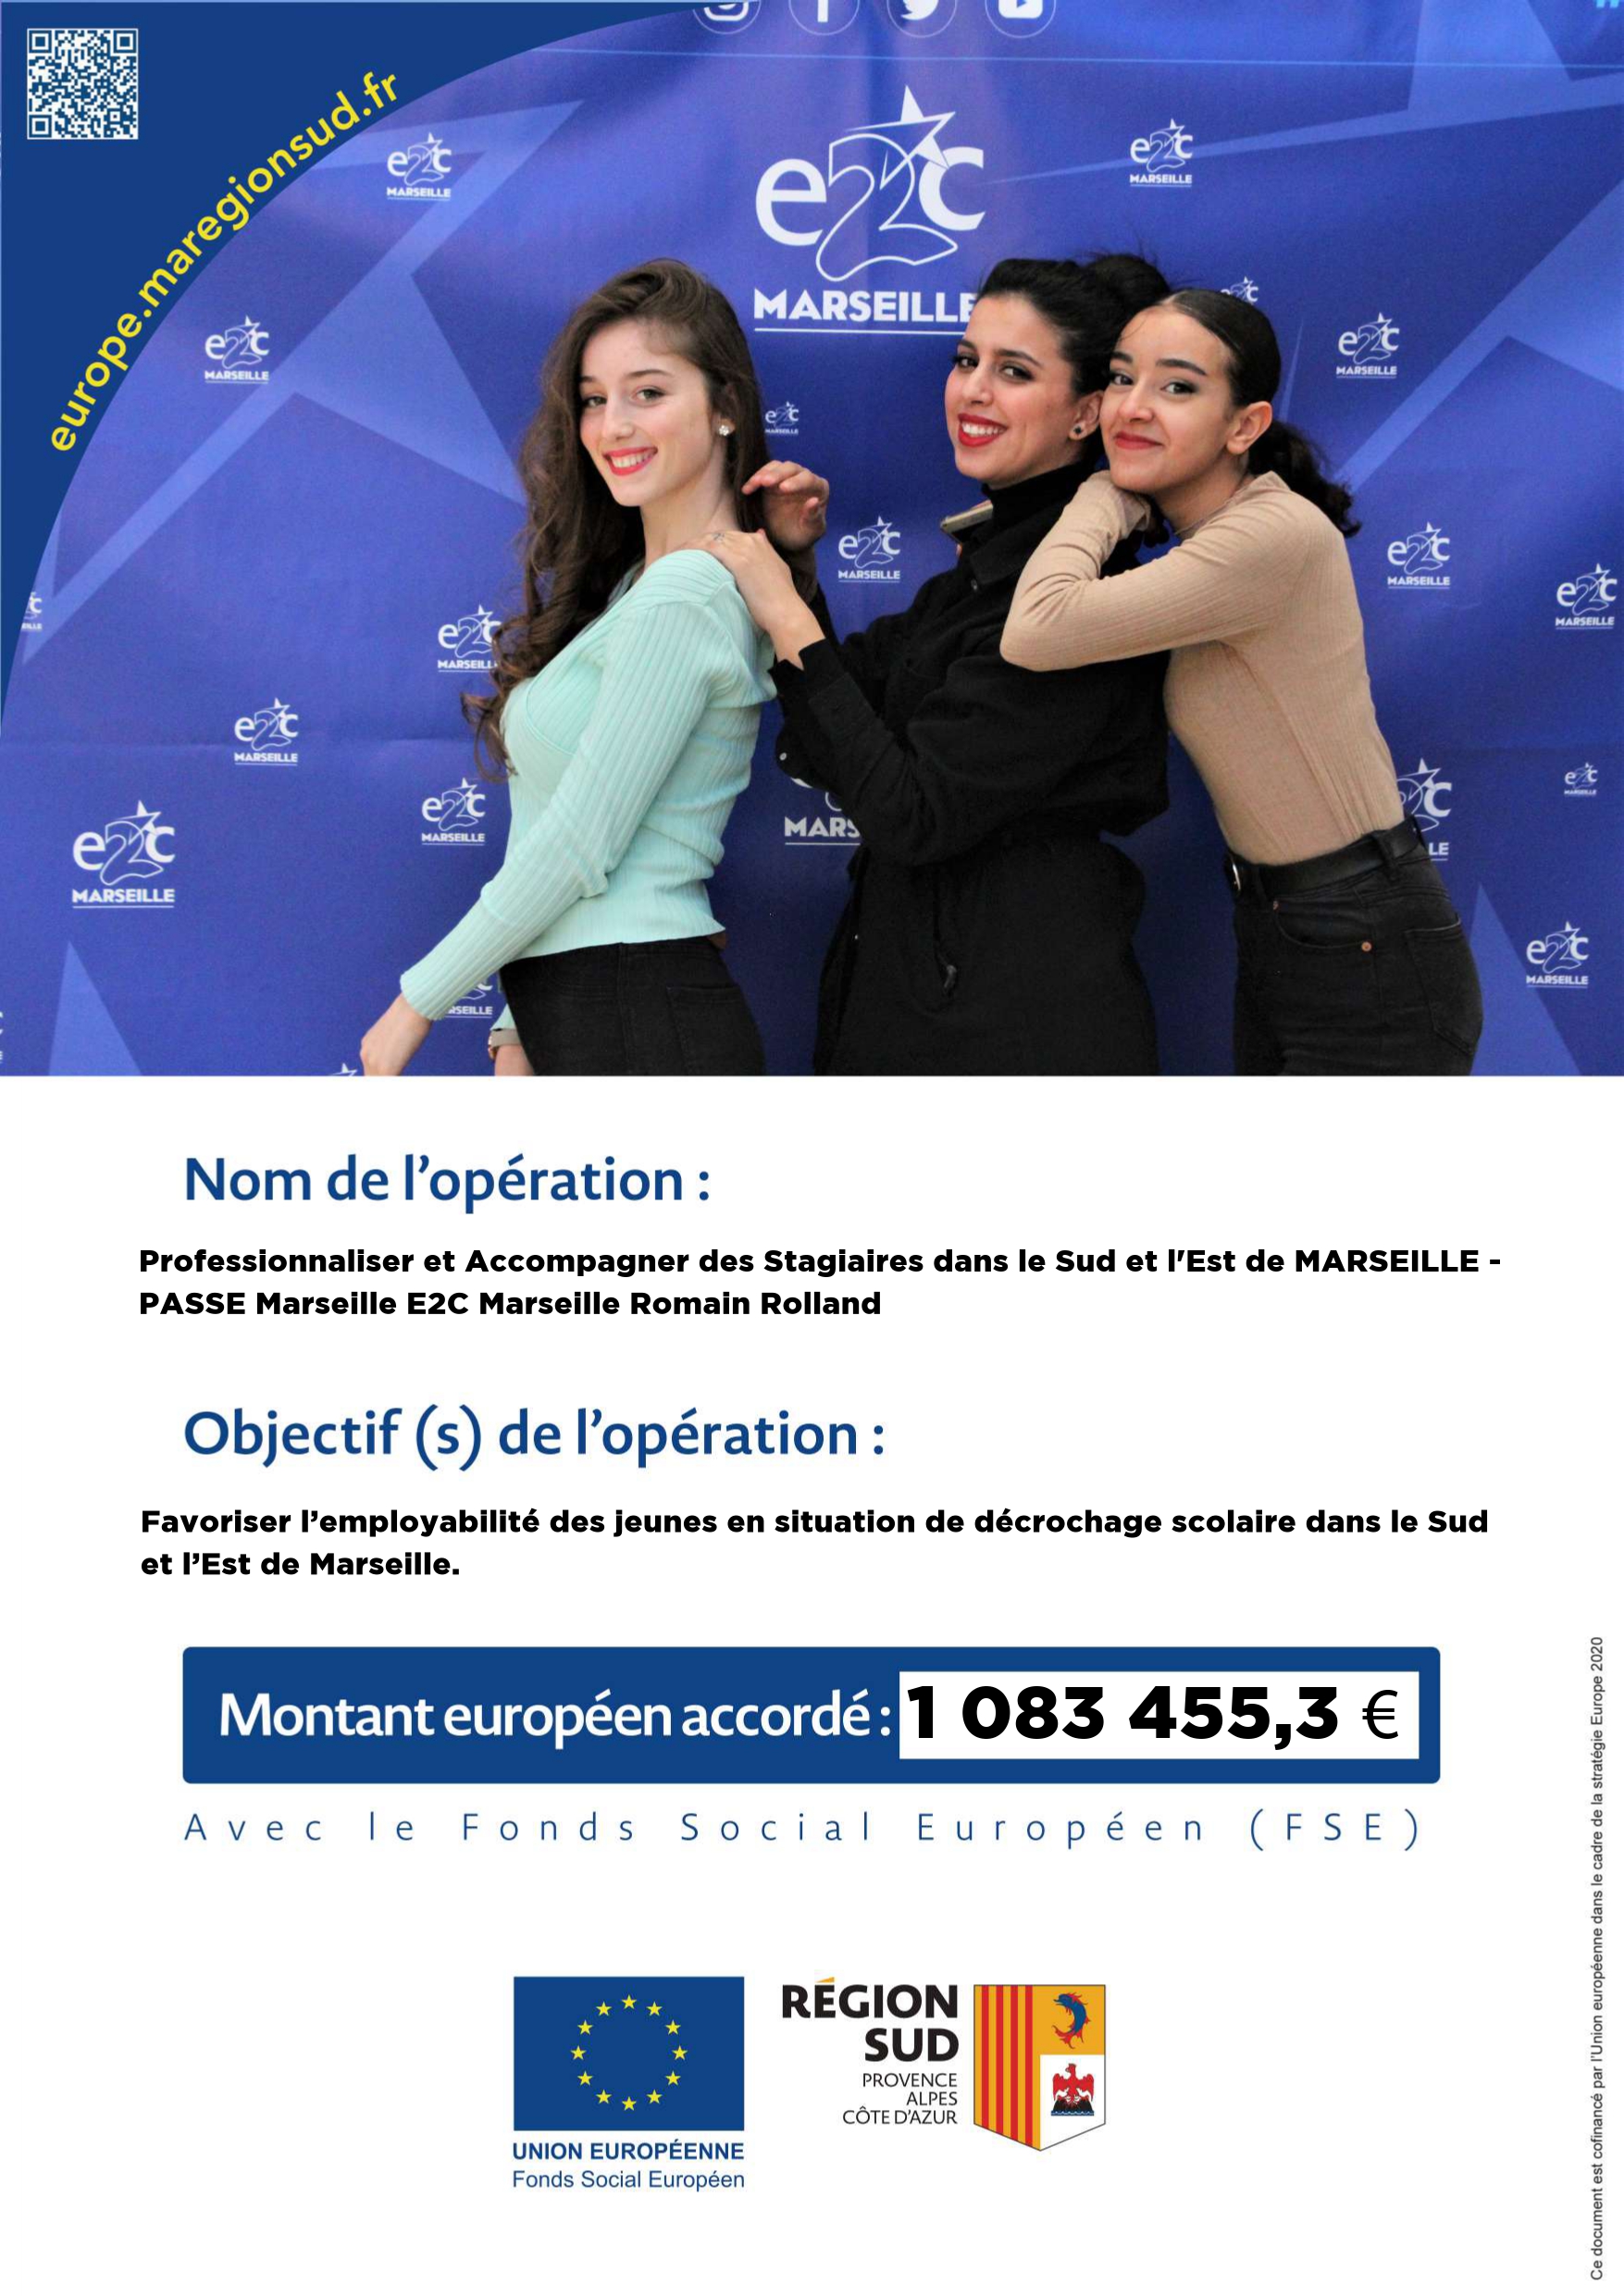 Fond-social-européen-finance-E2C-Marseille